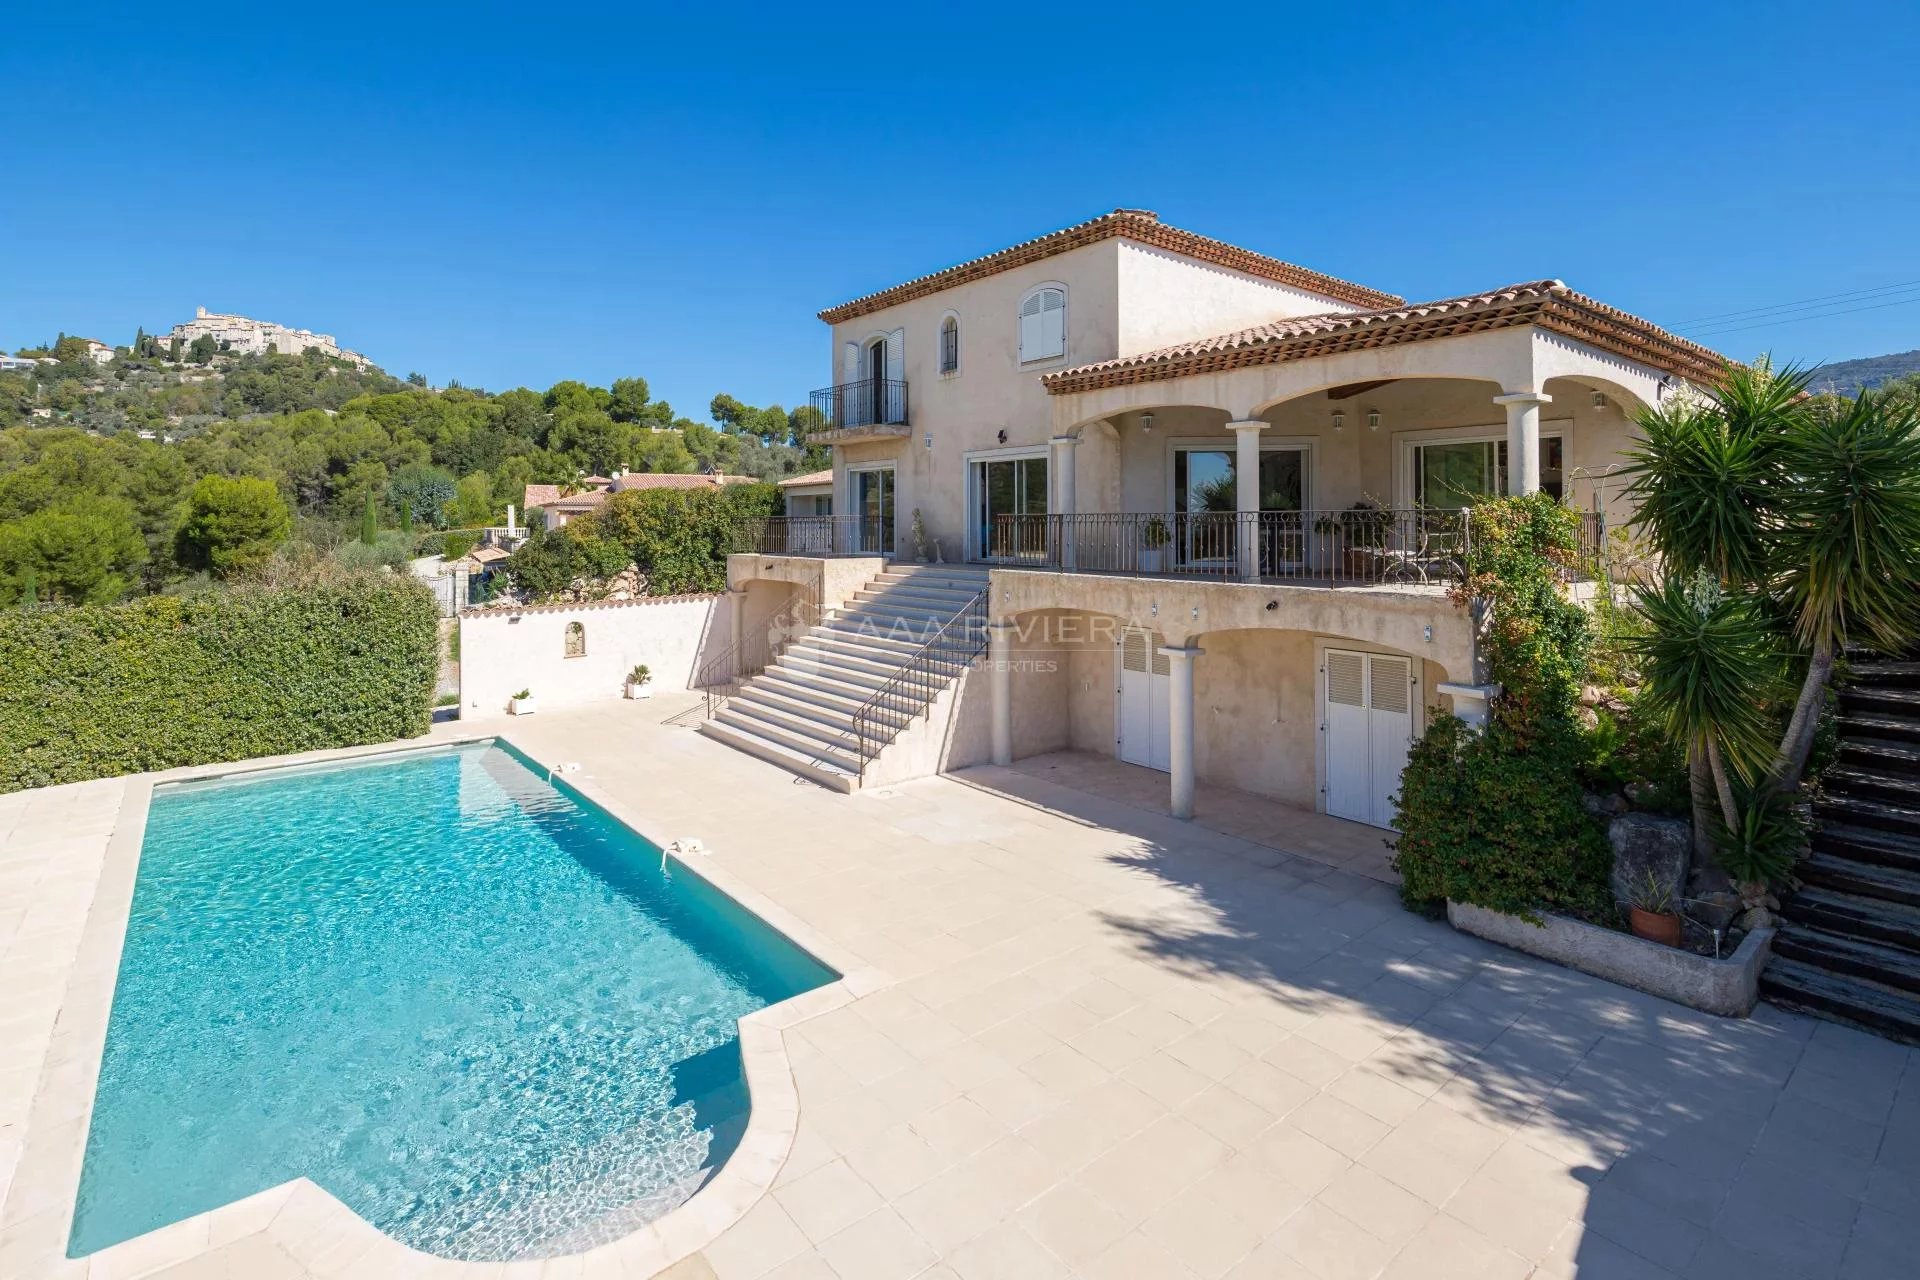 BUD AKSEPTERT -CARROS - Nyere villa med 6 soverom, svømmebasseng og panorama utsikt i Nice bakland